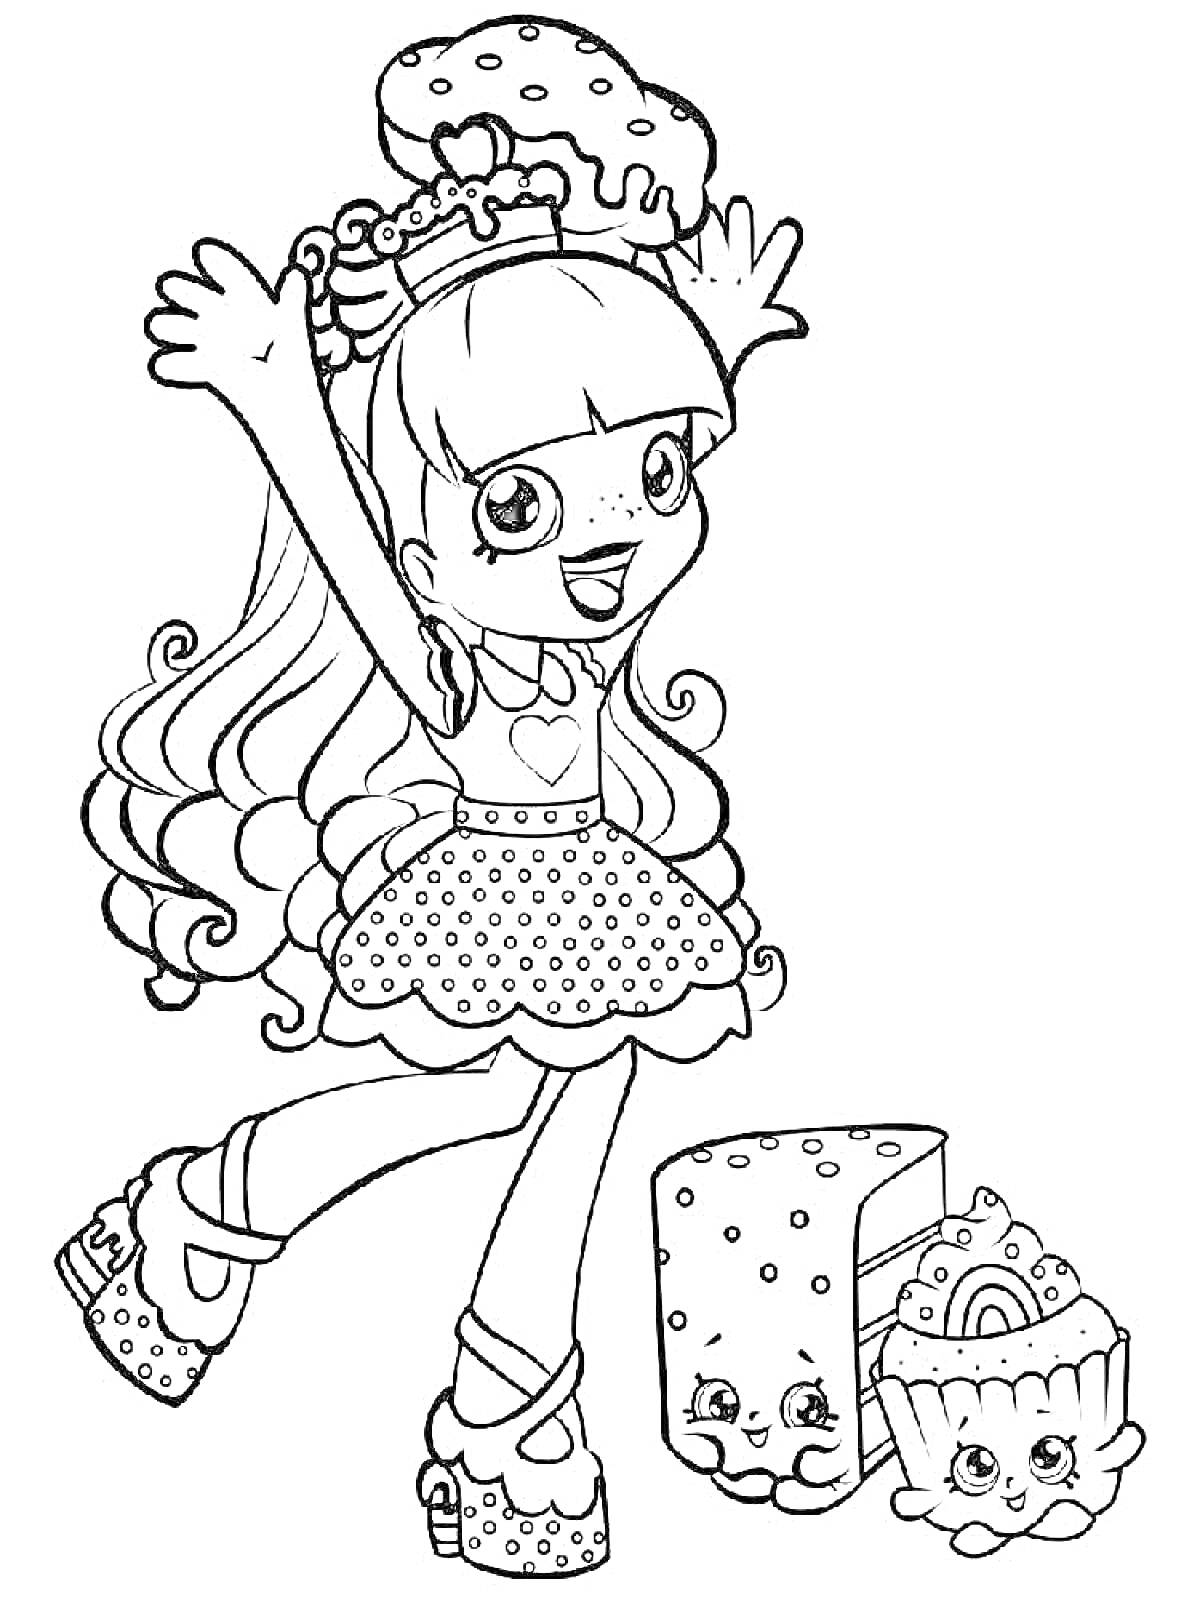 Раскраска Девочка с длинными волосами с сердечком на футболке, держащая пончик, рядом с пирожным и кусочком торта